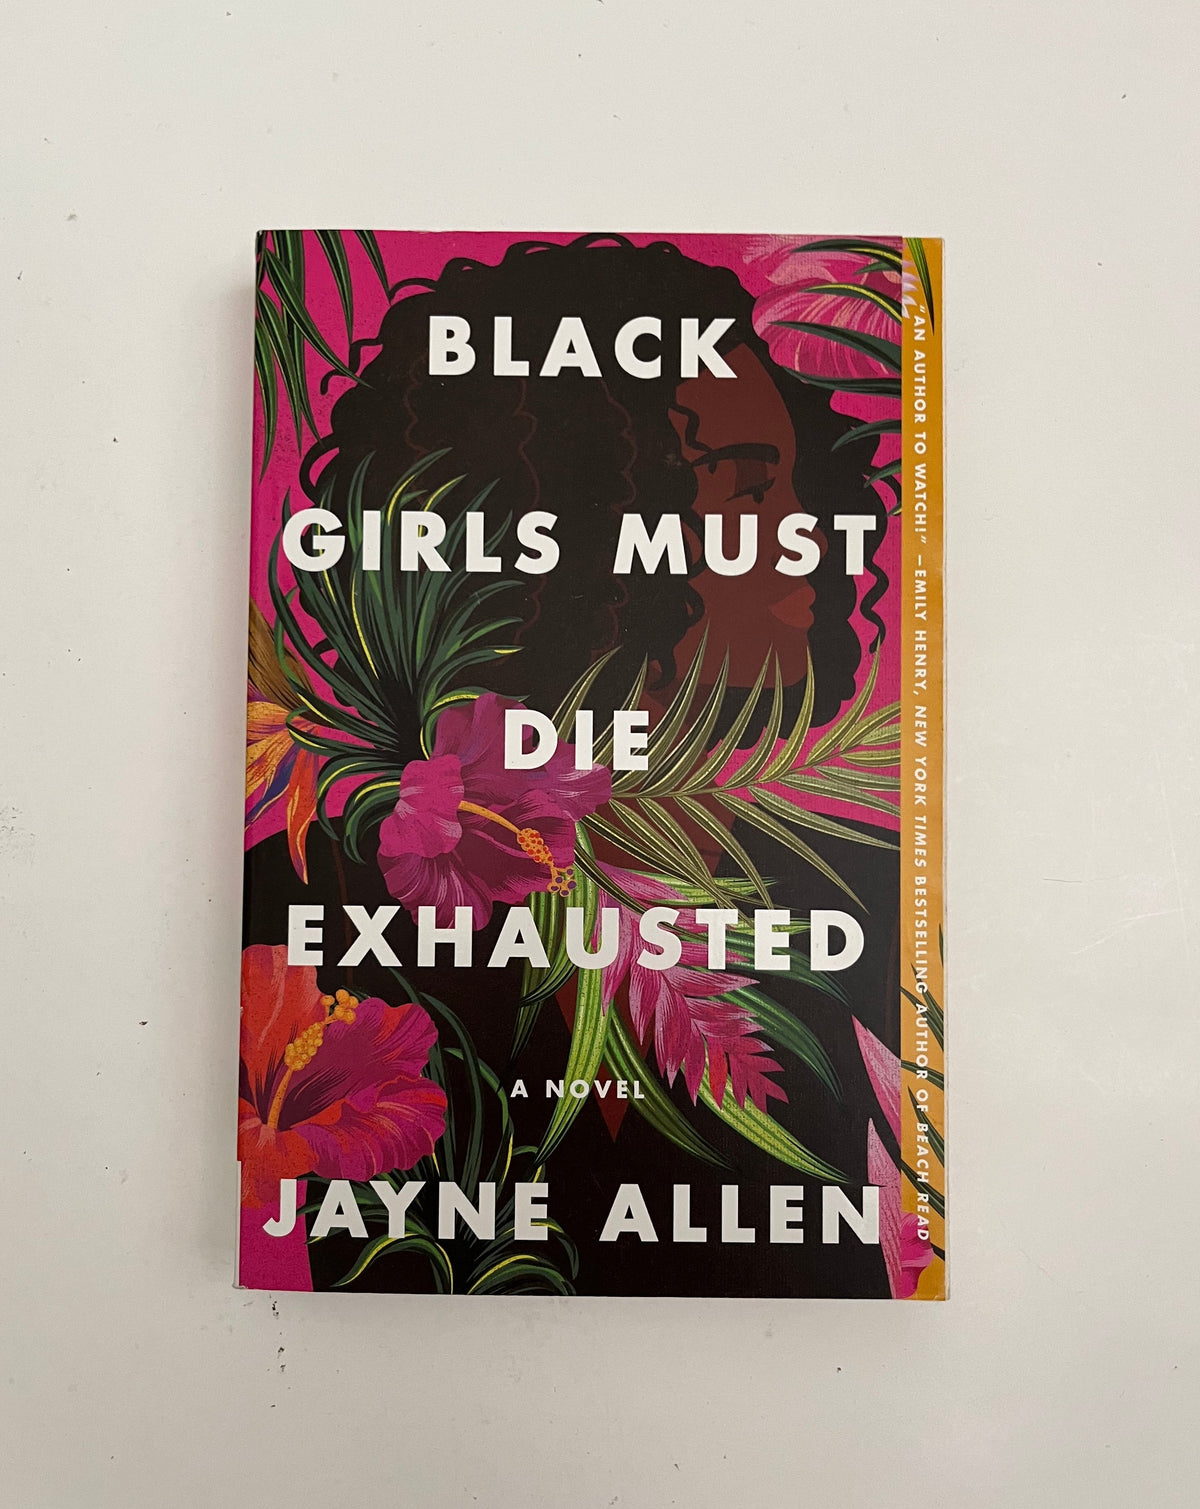 DONATE: Black Girls Must Die Exhausted by Jayne Allen